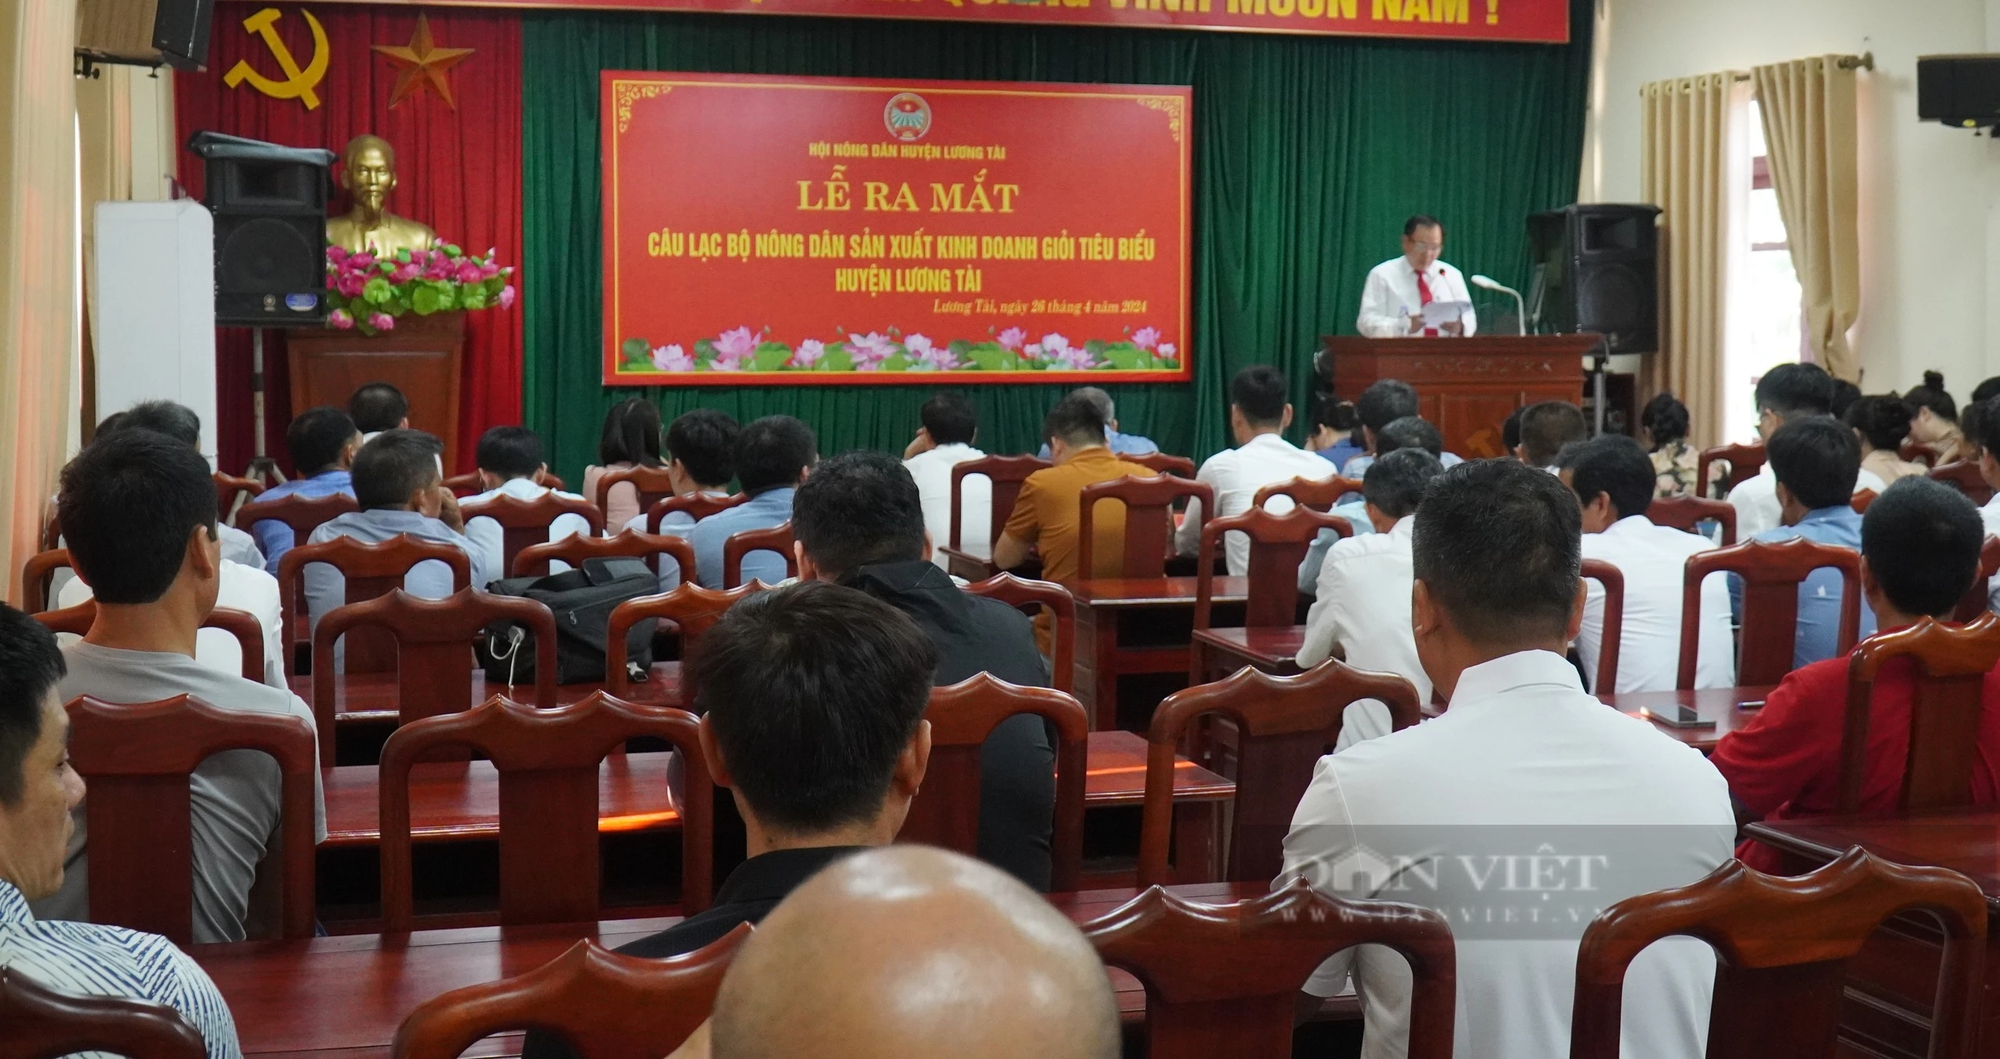 Bắc Ninh ra mắt Câu lạc bộ sản xuất kinh doanh giỏi tiêu biểu huyện Lương Tài- Ảnh 1.